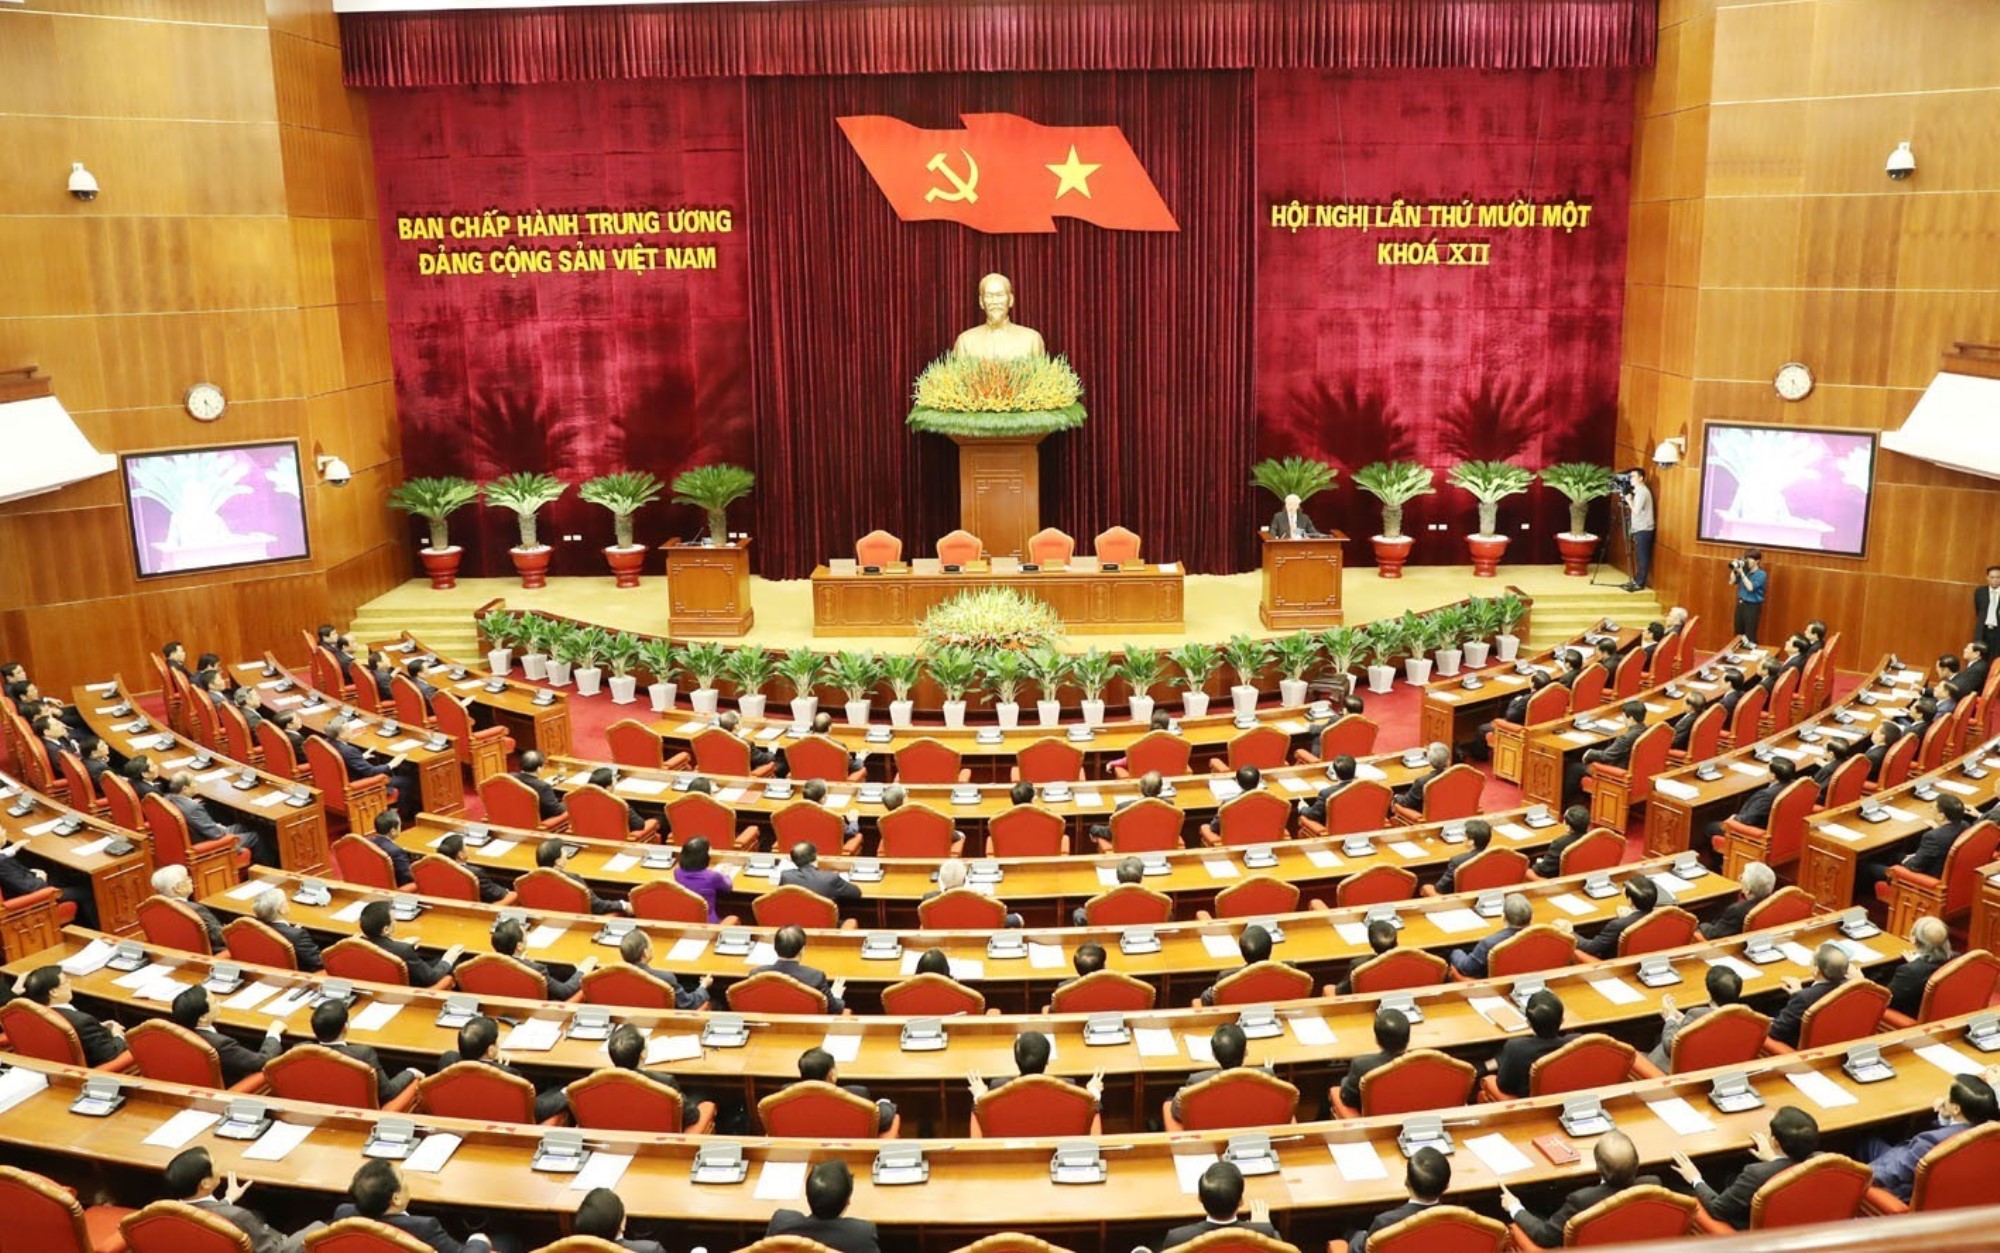 Chiều 12/10/2019, Hội nghị lần thứ mười một Ban Chấp hành Trung ương Đảng Cộng sản Việt Nam (khóa XII) họp phiên bế mạc tại trụ sở Trung ương Đảng, Hà Nội. (Ảnh: Trí Dũng/TTXVN)